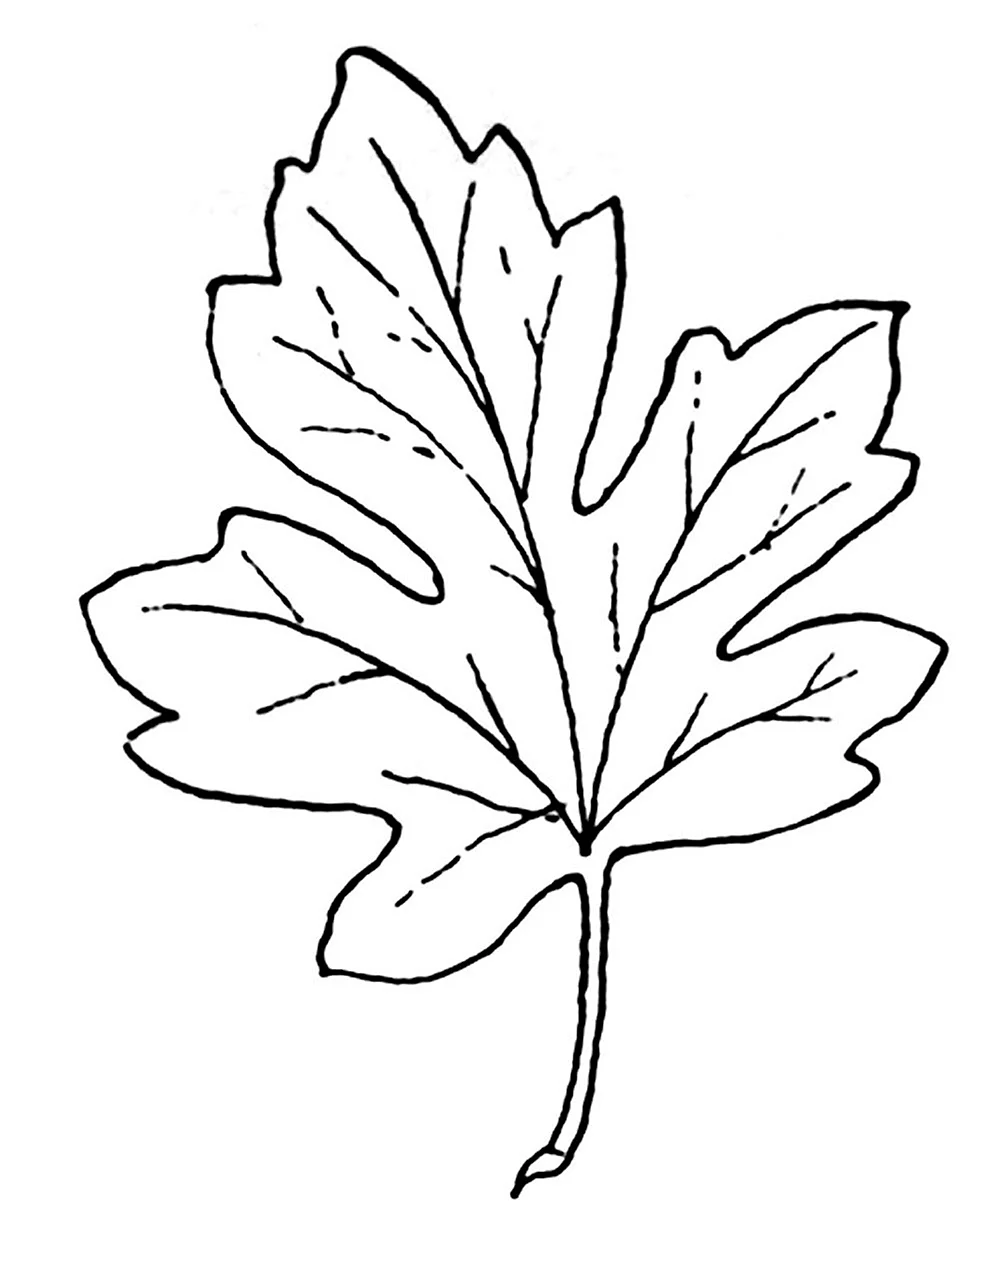 Шаблоны для рисования листья деревьев